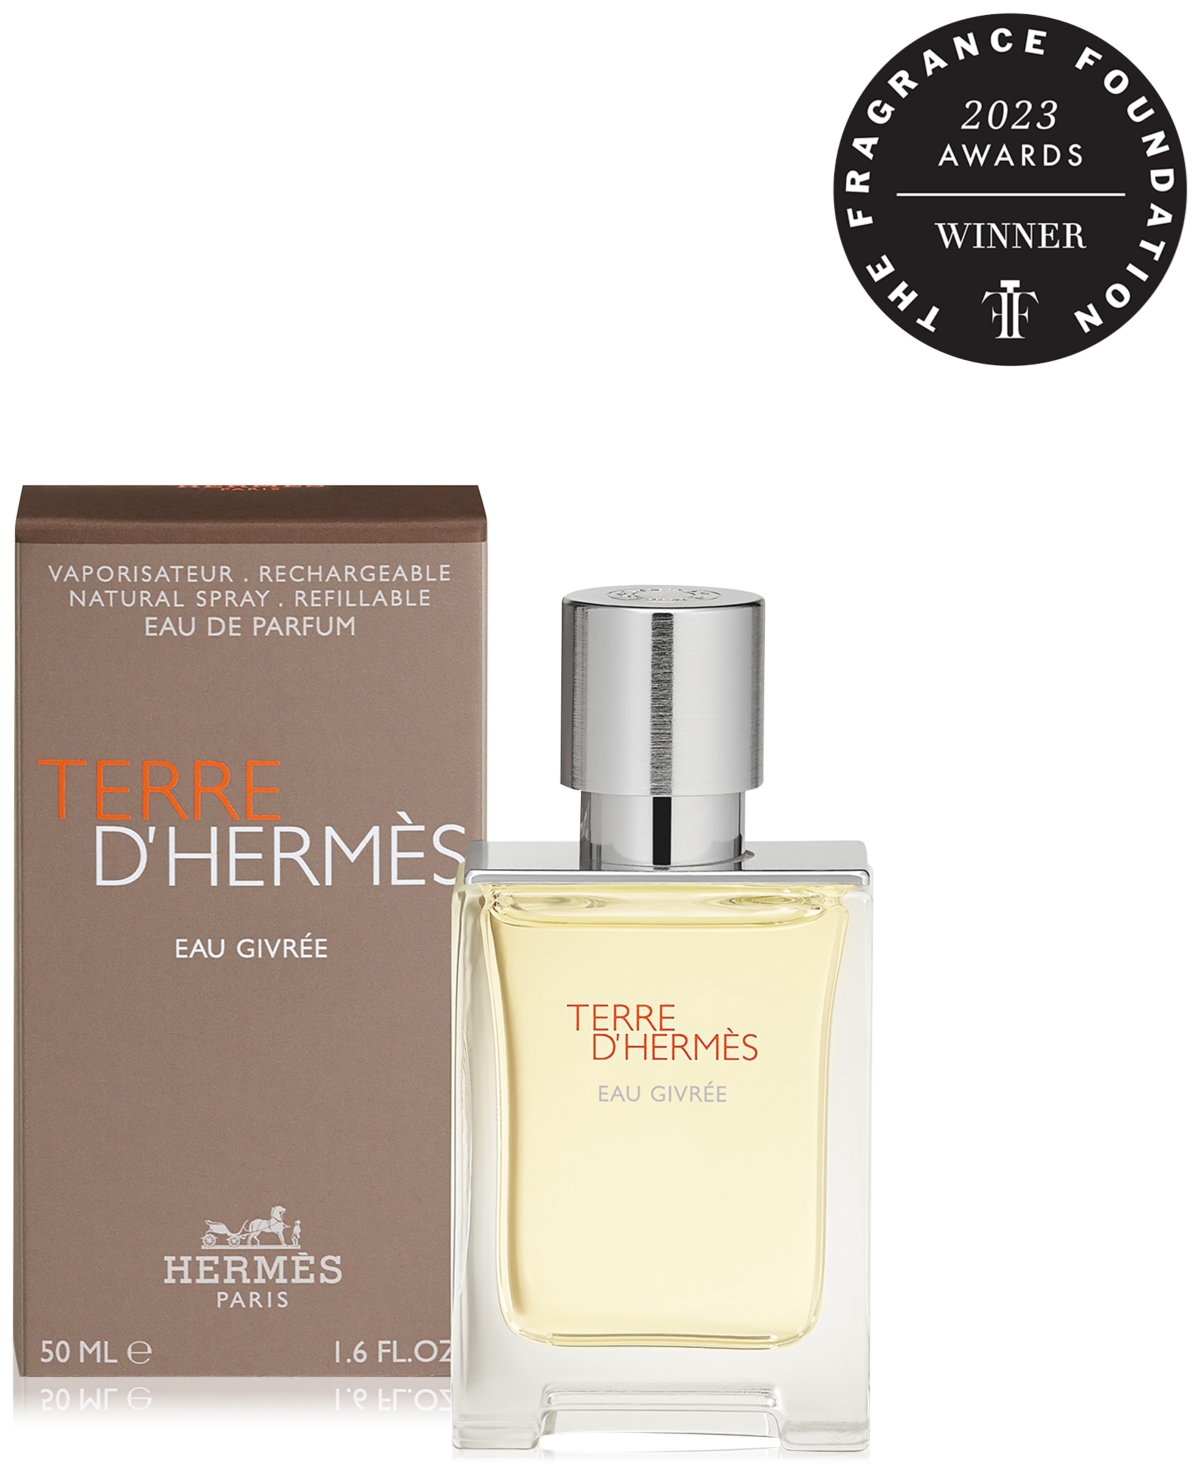 HERMES Terre d'Hermes Eau Givree Eau de Parfum Spray, 1.6 oz.